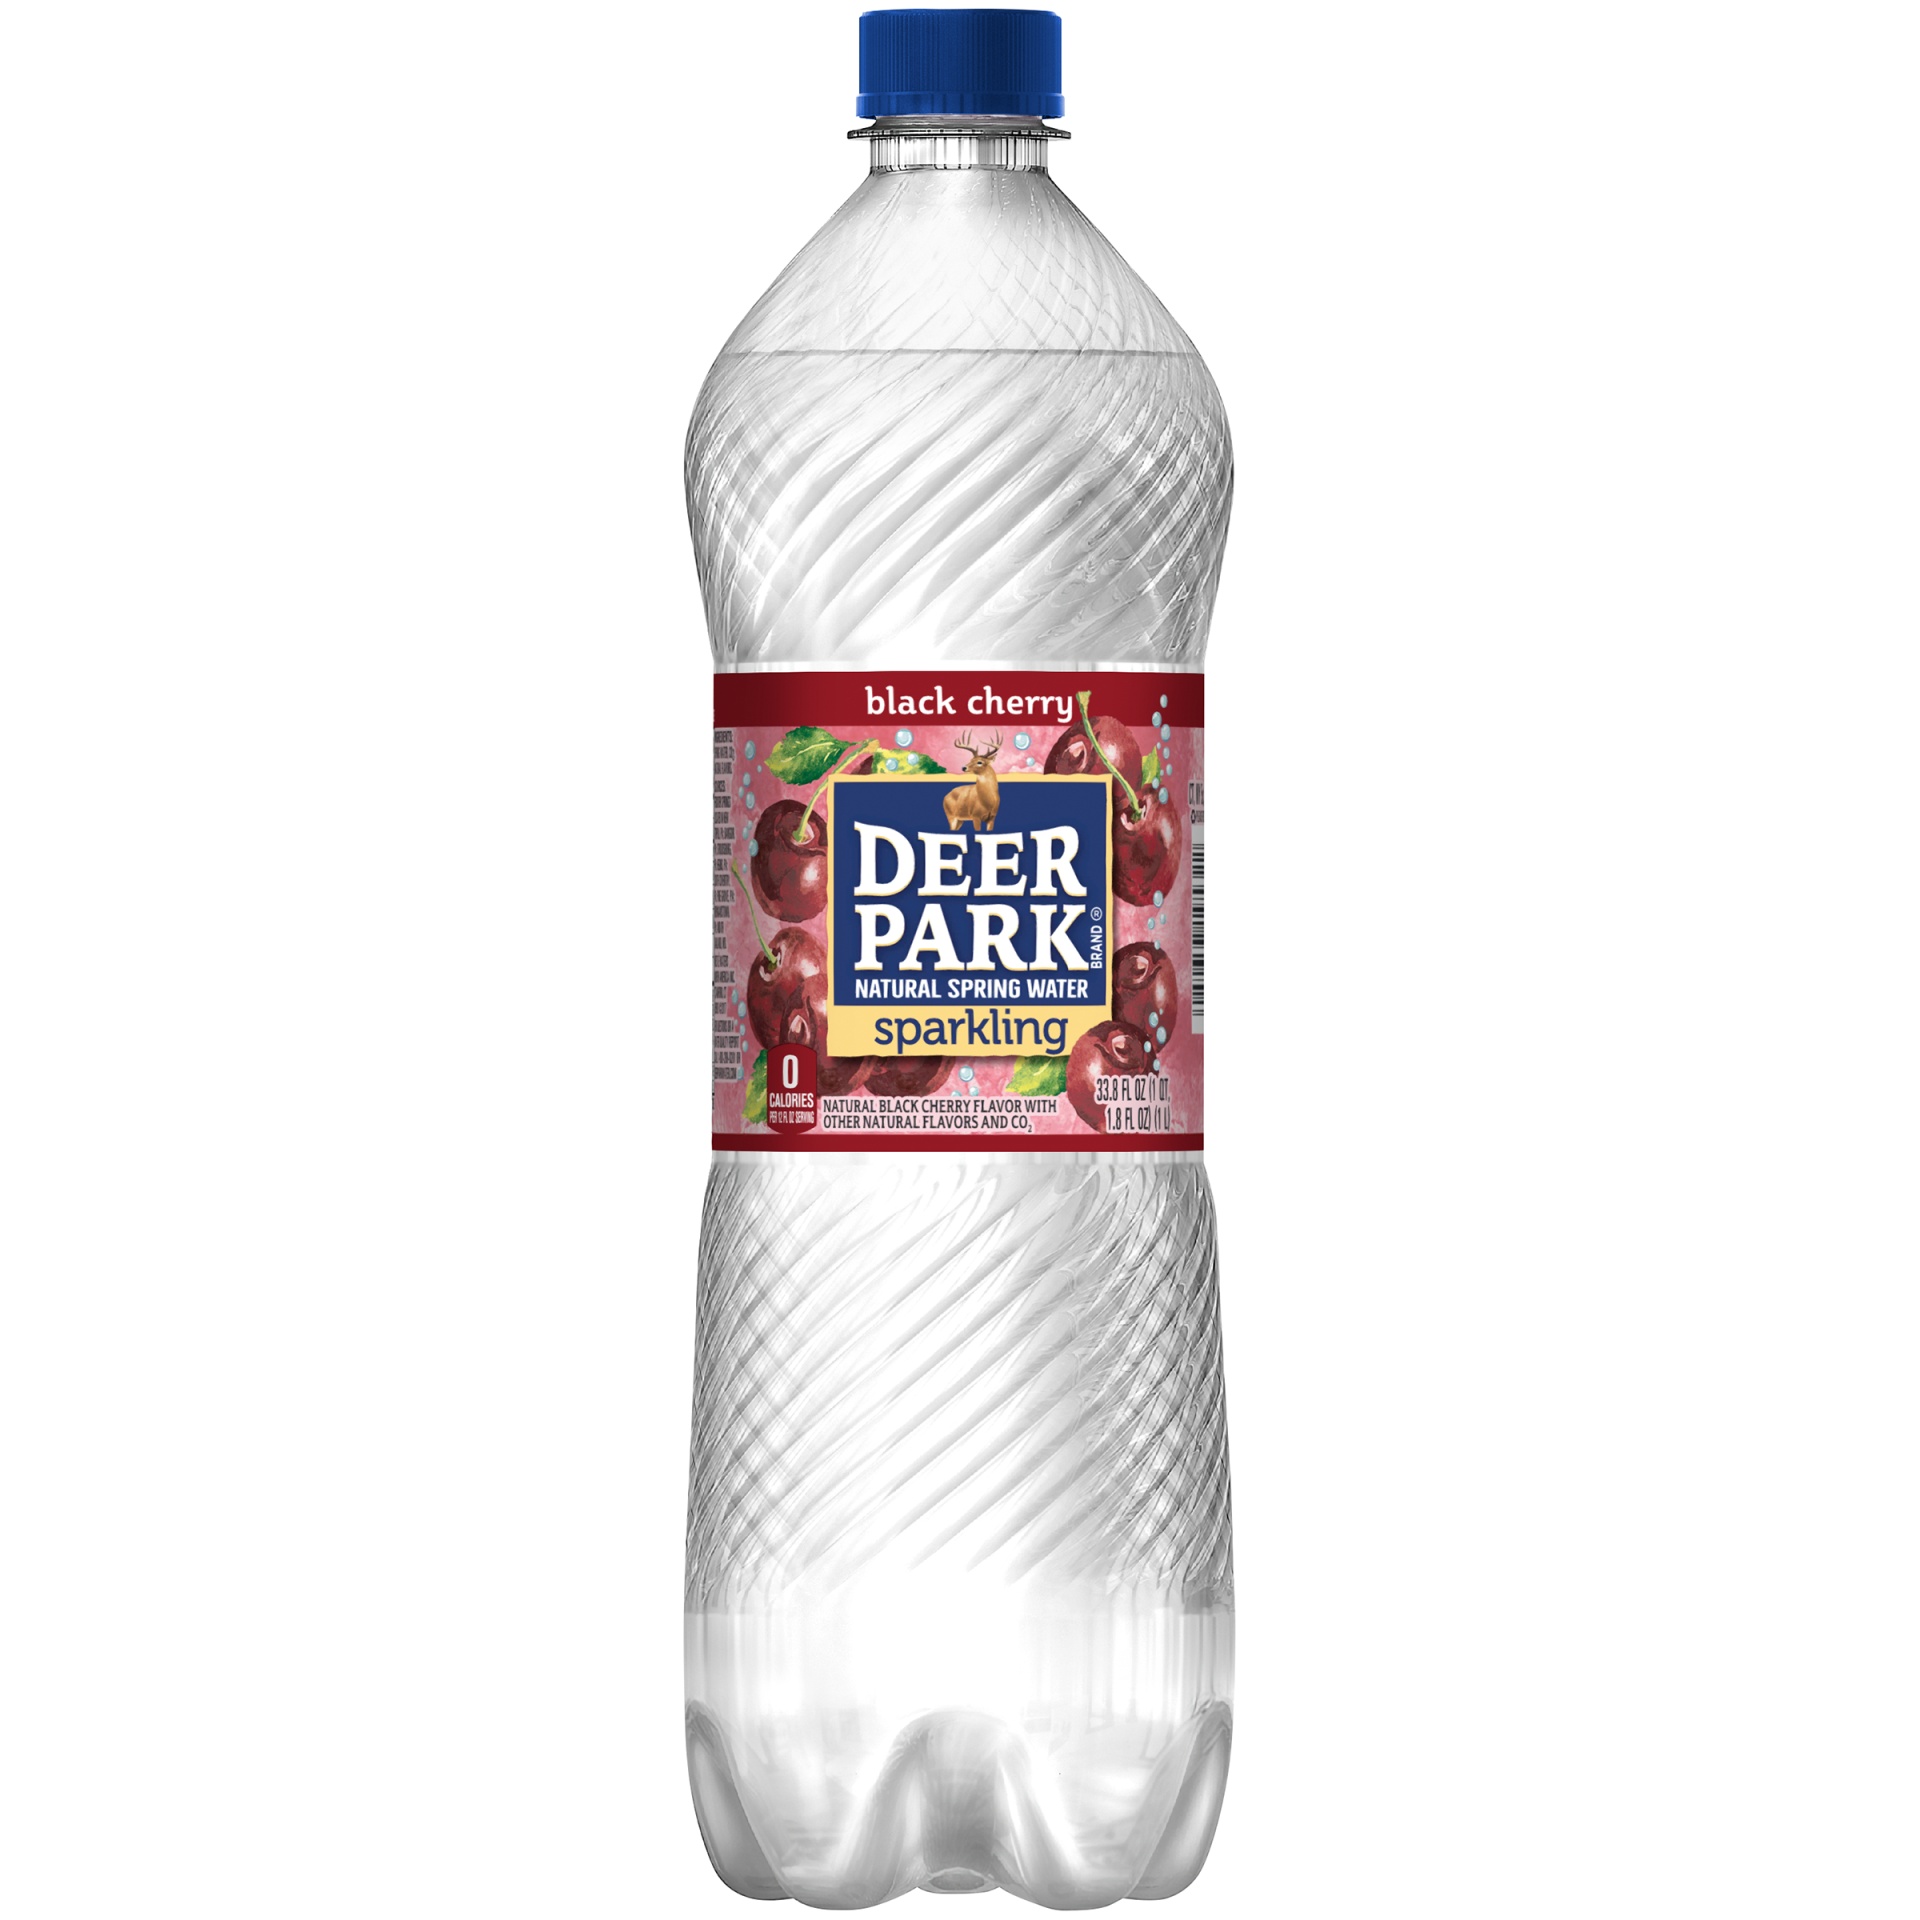 slide 4 of 6, Deer Park Sparkling Black Cherry Bottle, 33.8 fl oz